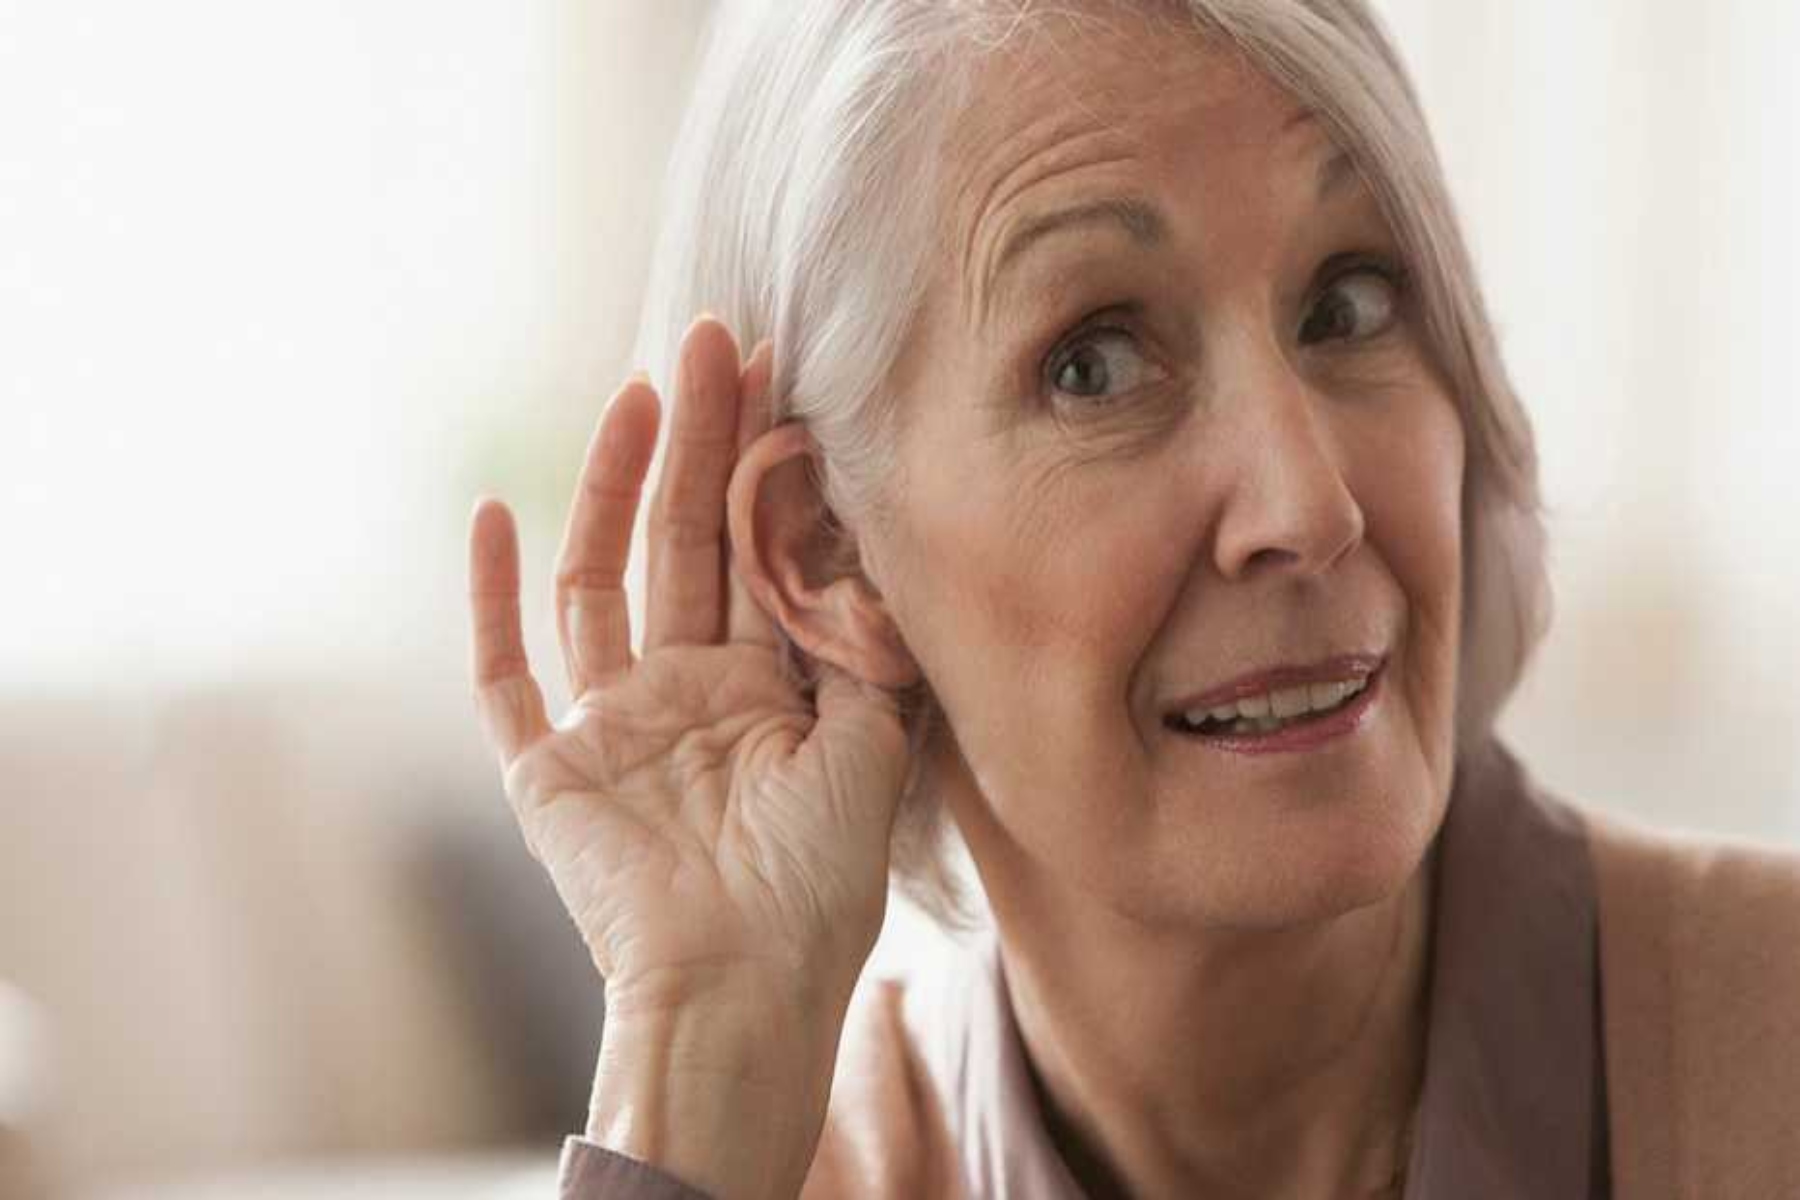 Ακοή έρευνα: 18 εκατομμύρια άνθρωποι στη Βρετανία υποφέρουν από απώλεια ακοής